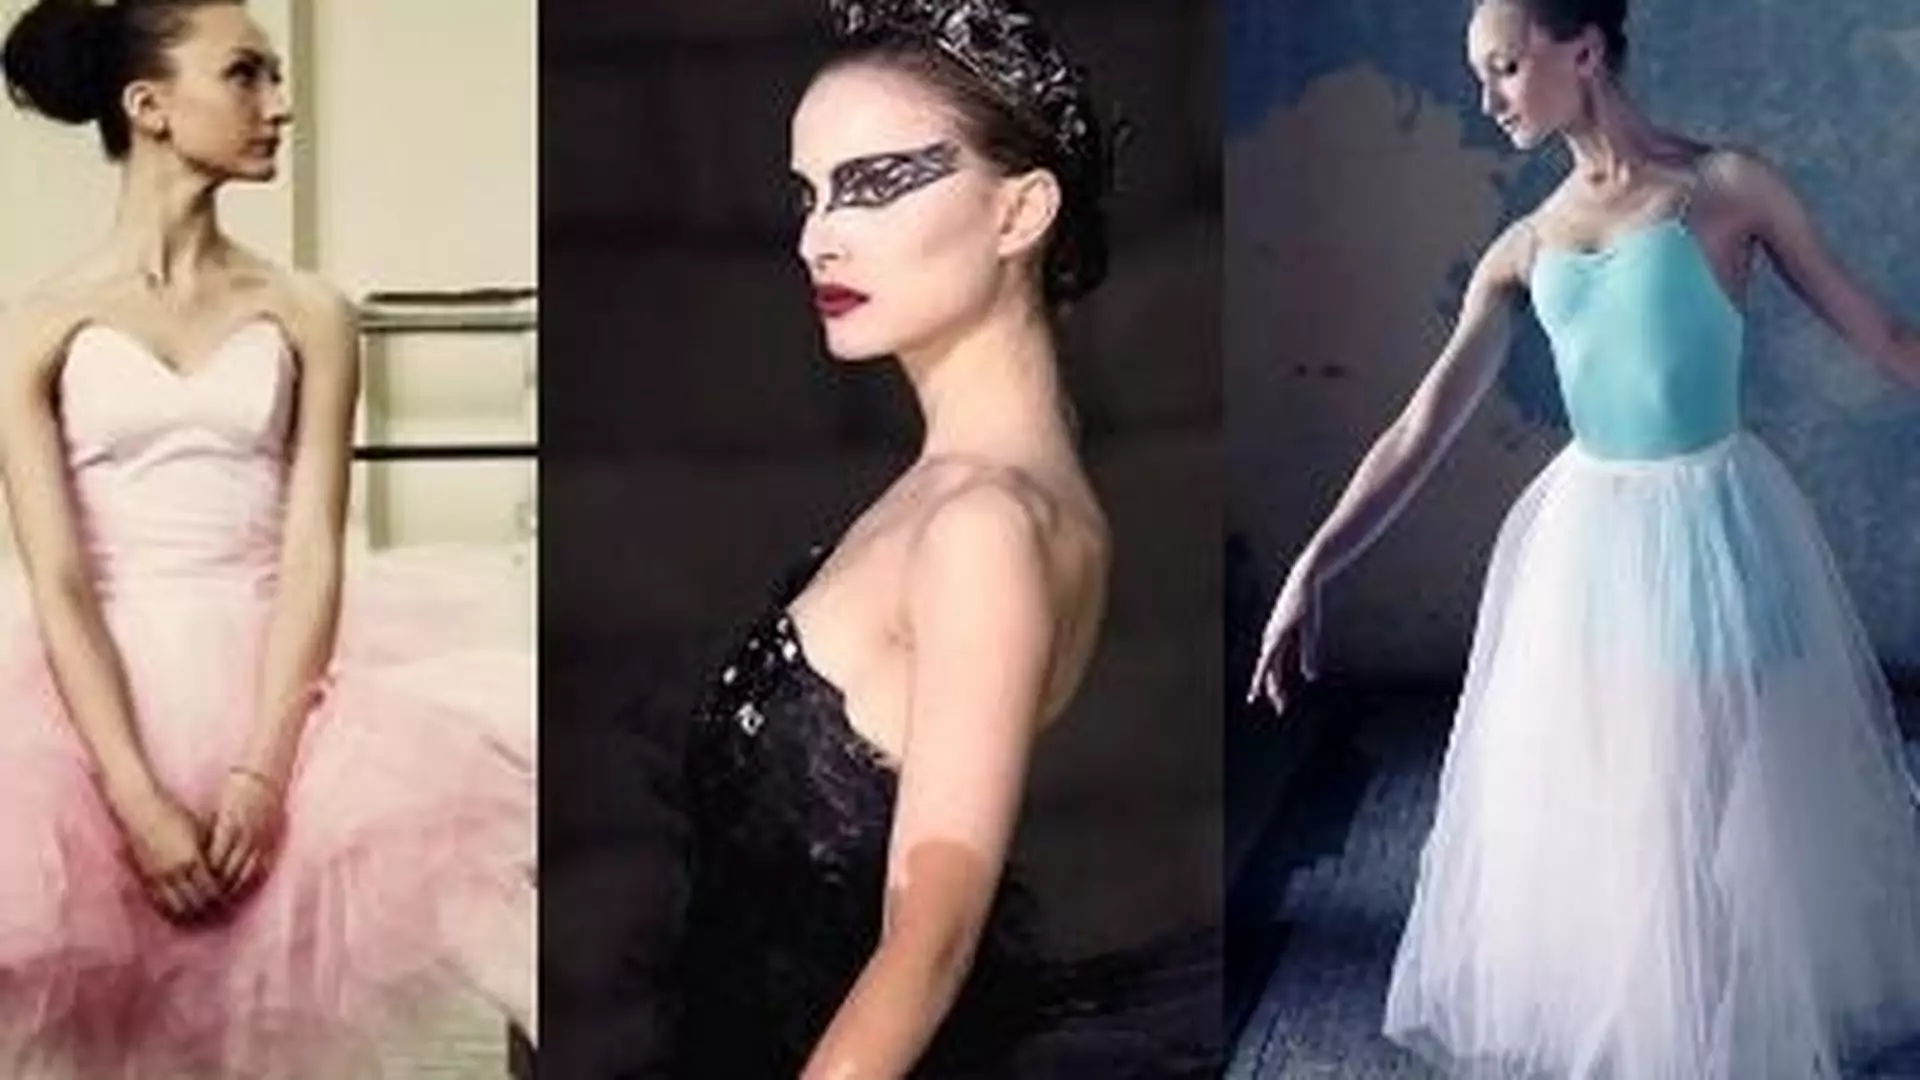 Ubierz się jak balerina: moda inspirowana filmem "Czarny łabędź"